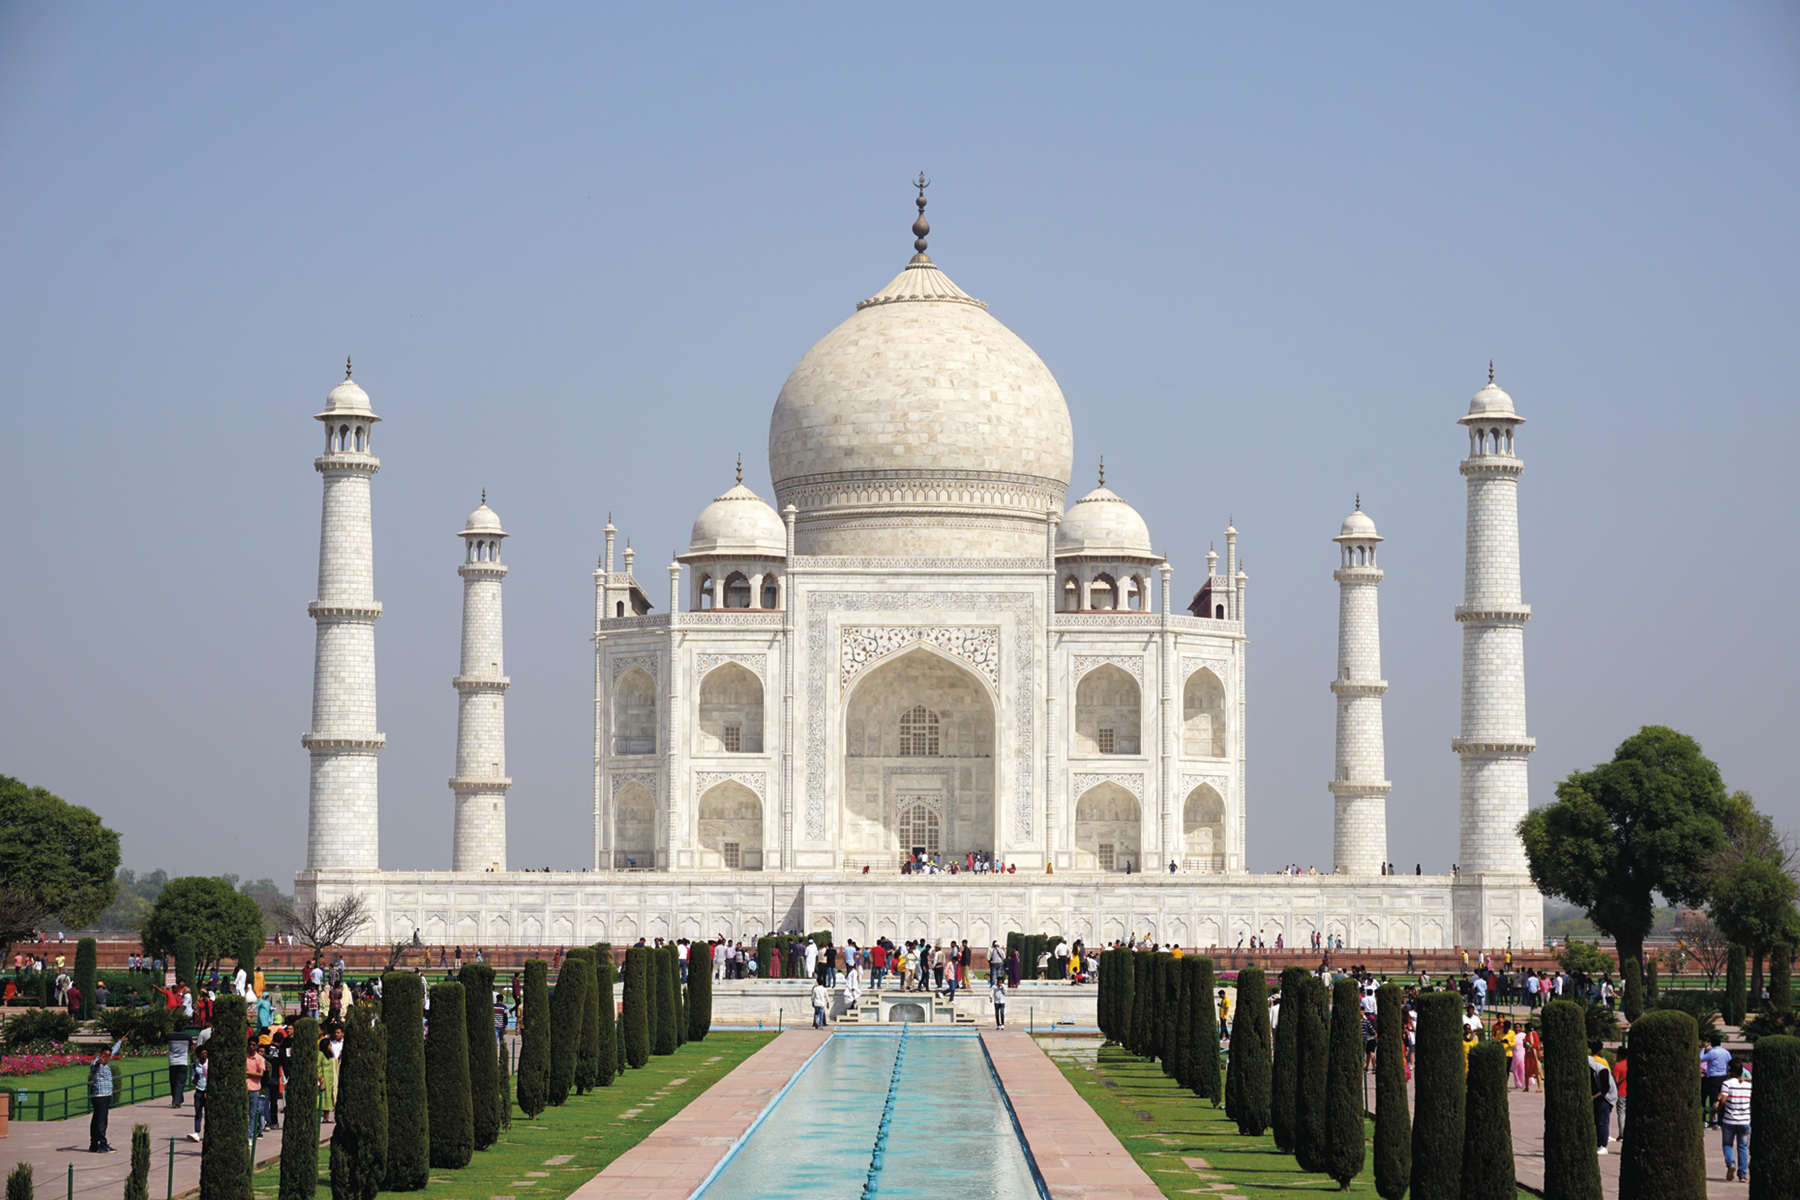 Fotografia. Taj Mahal, construção ampla com uma grande cúpula no topo ao centro e torres finas ao redor. Em frente a uma piscina retangular com fileiras de árvores e pessoas entre elas.